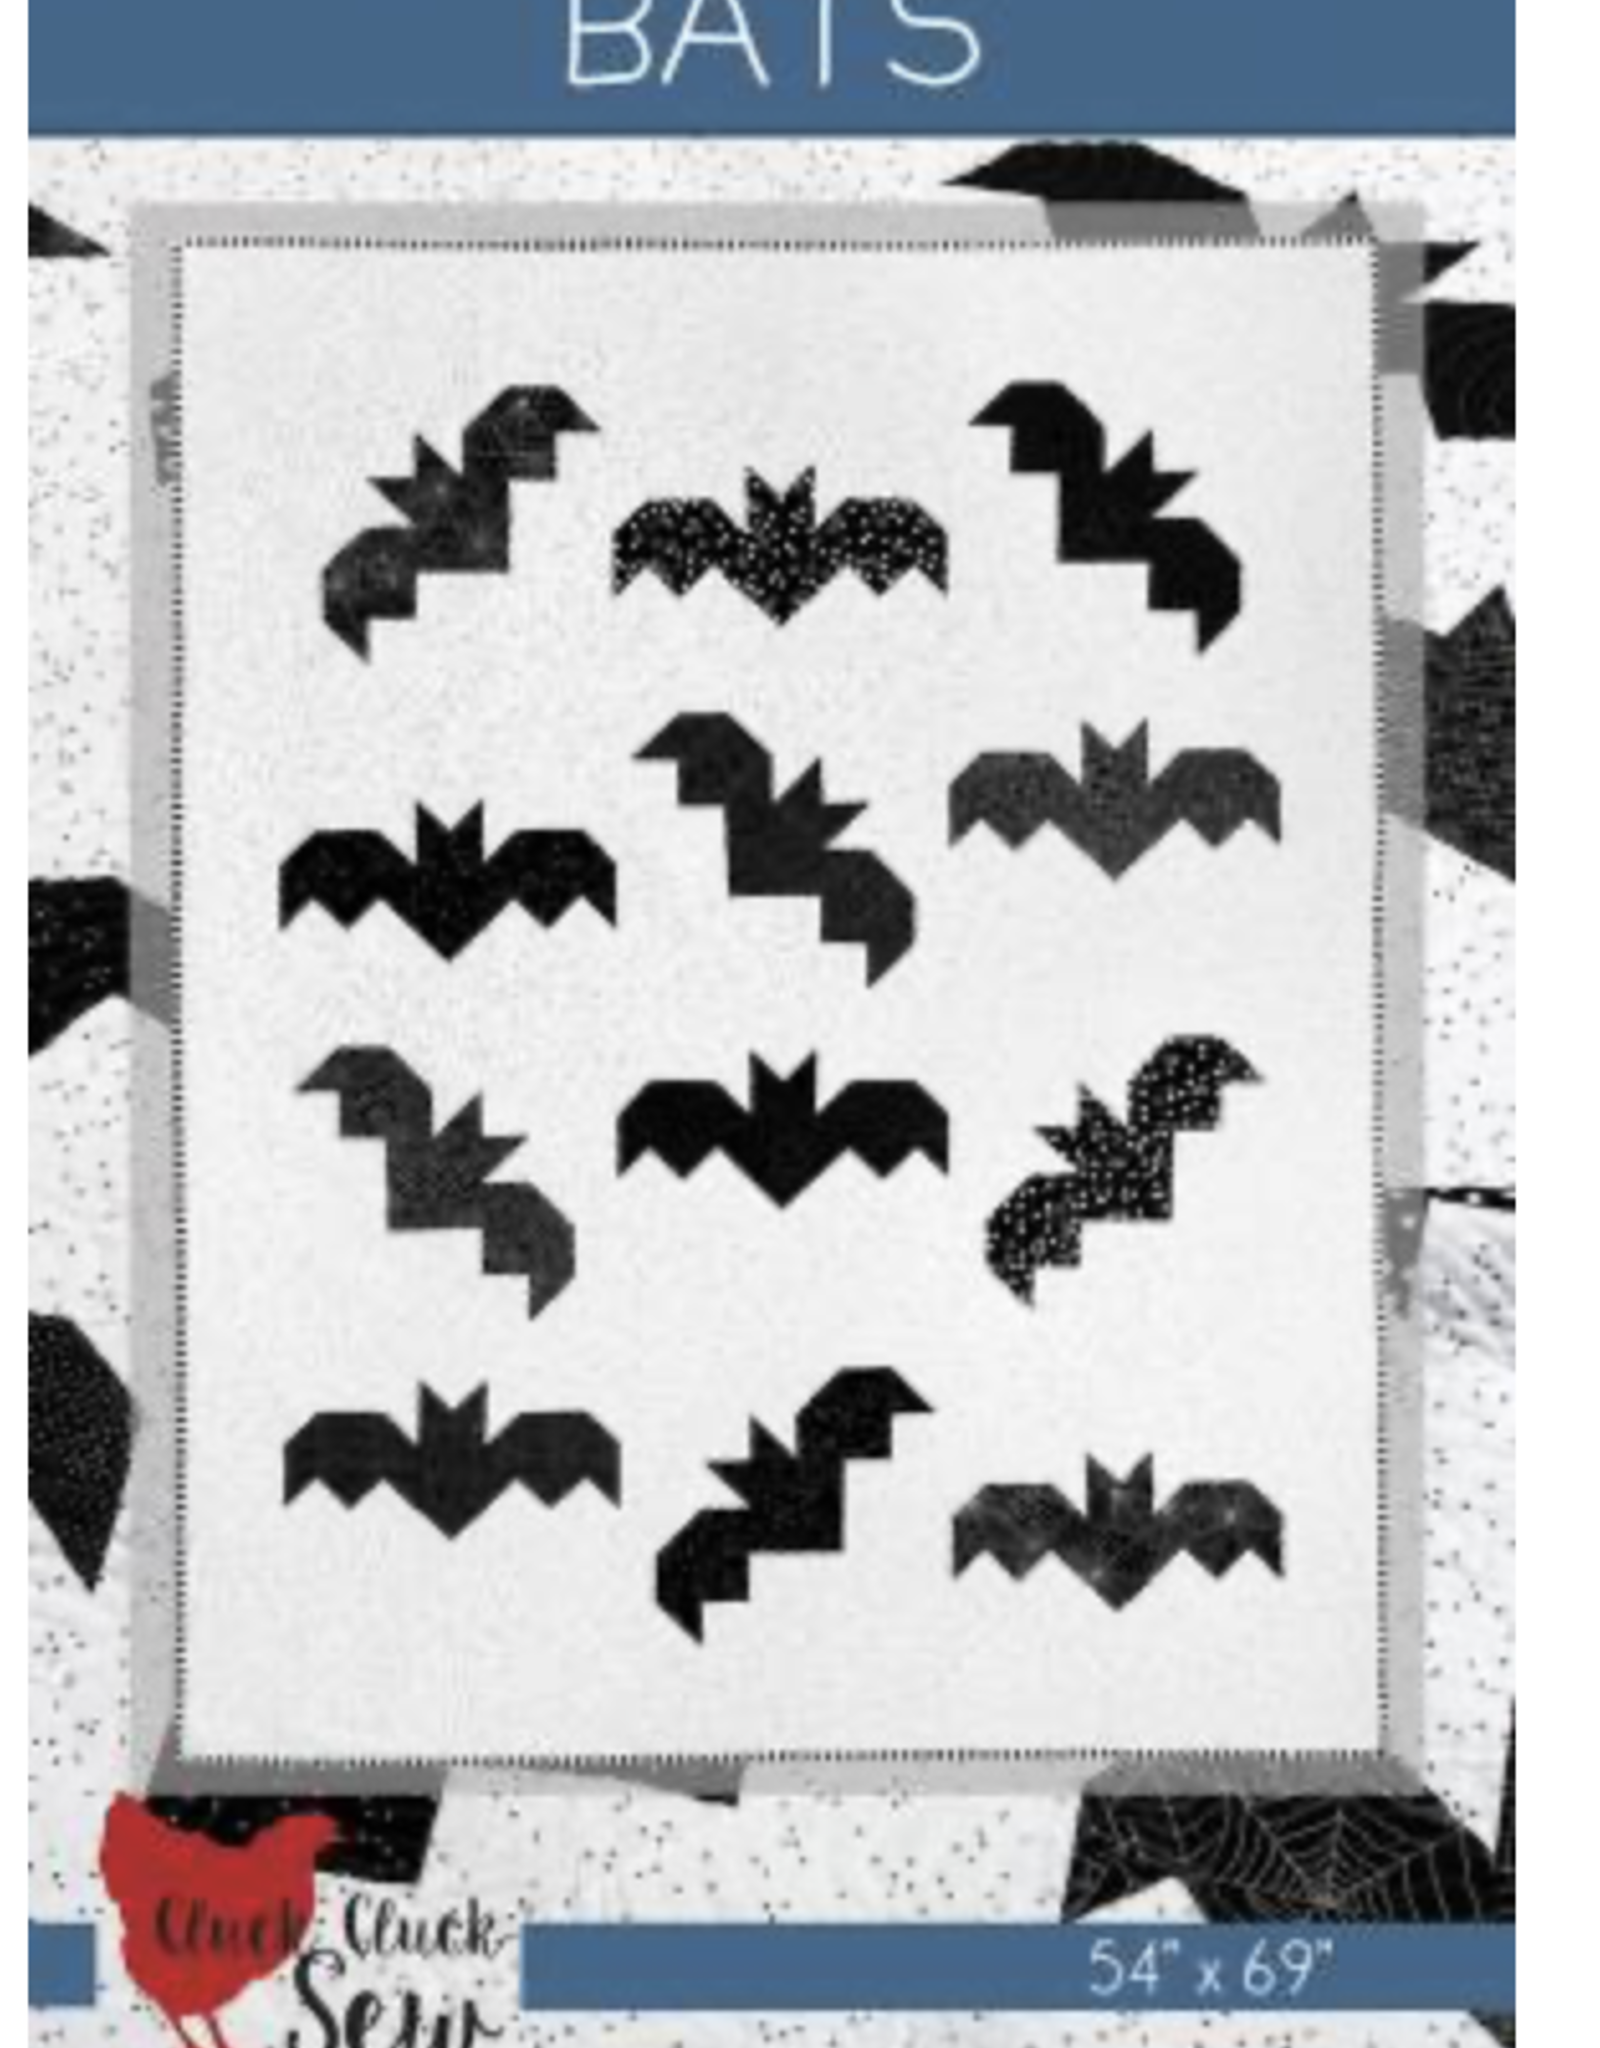 Cluck Cluck Sew Bats - Quilt Pattern